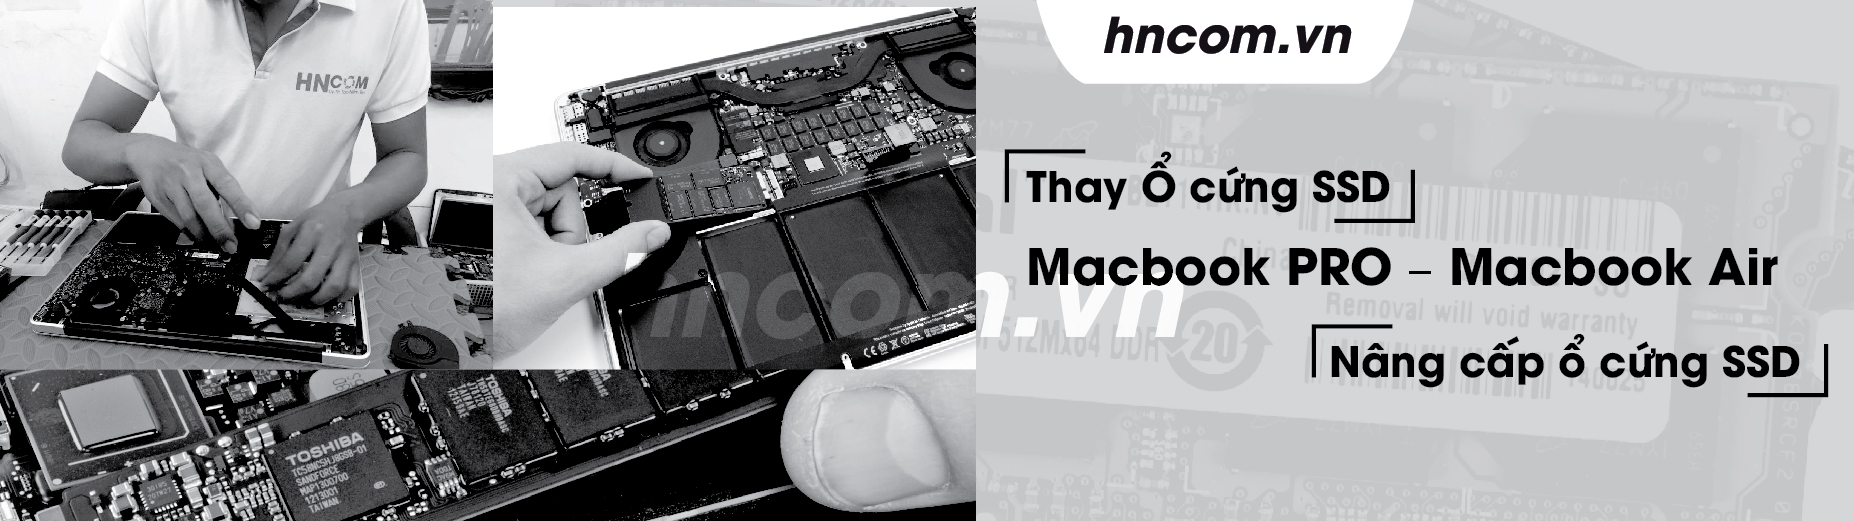 Thay Ổ cứng SSD – Nâng cấp ổ cứng SSD cho Macbook PRO & Macbook Air